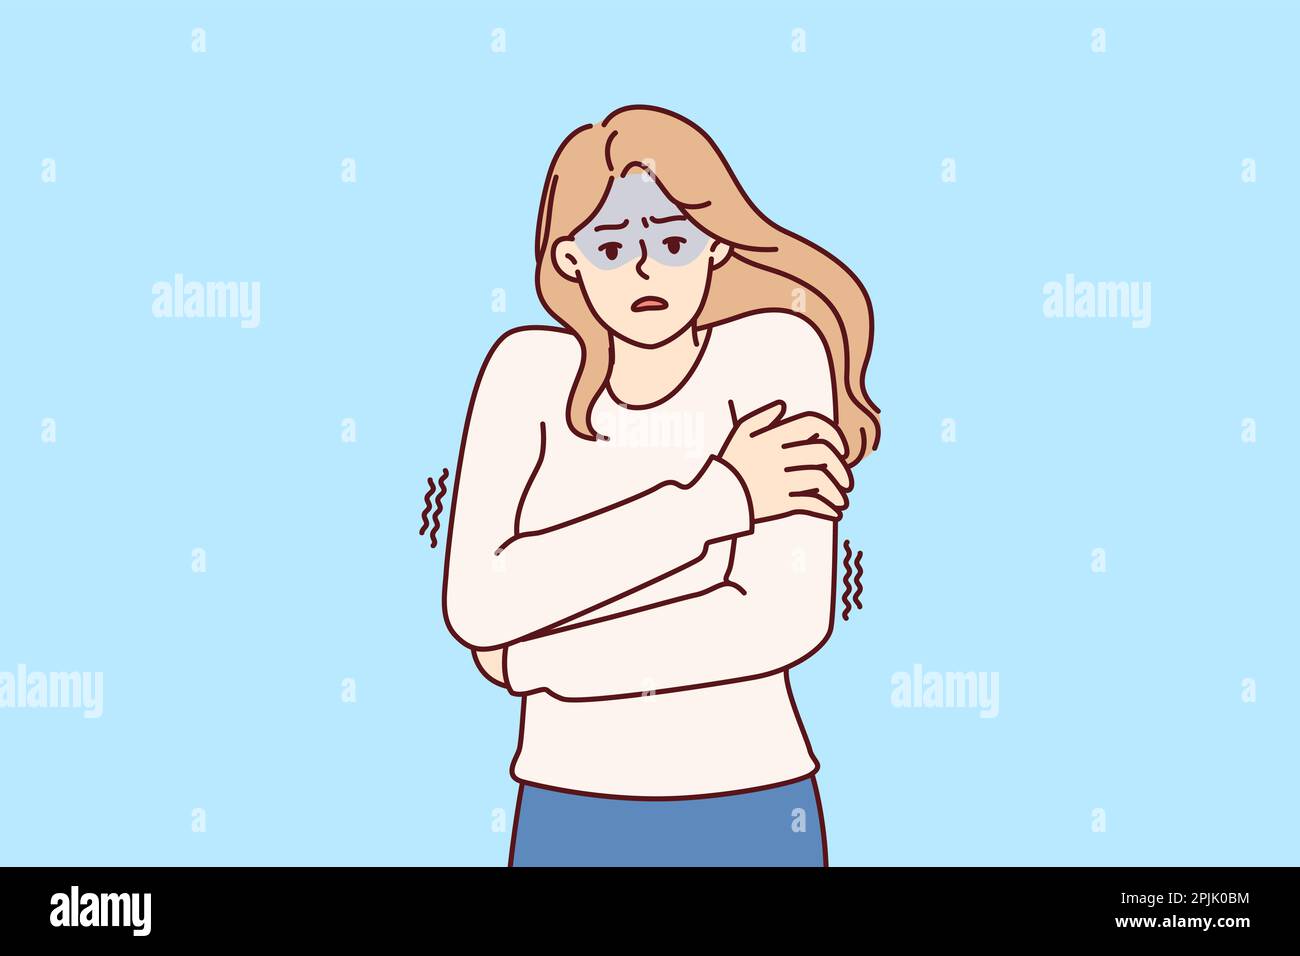 Erfrierende Frau, die Schultern umarmt, um warm zu bleiben und sich nach einer Grippeinfektion oder Fieber Schüttelfrost zu fühlen. Ein eiskaltes Mädchen im Pullover träumt von einem warmen Haus, um auf kaltes Wetter zu warten Stock Vektor